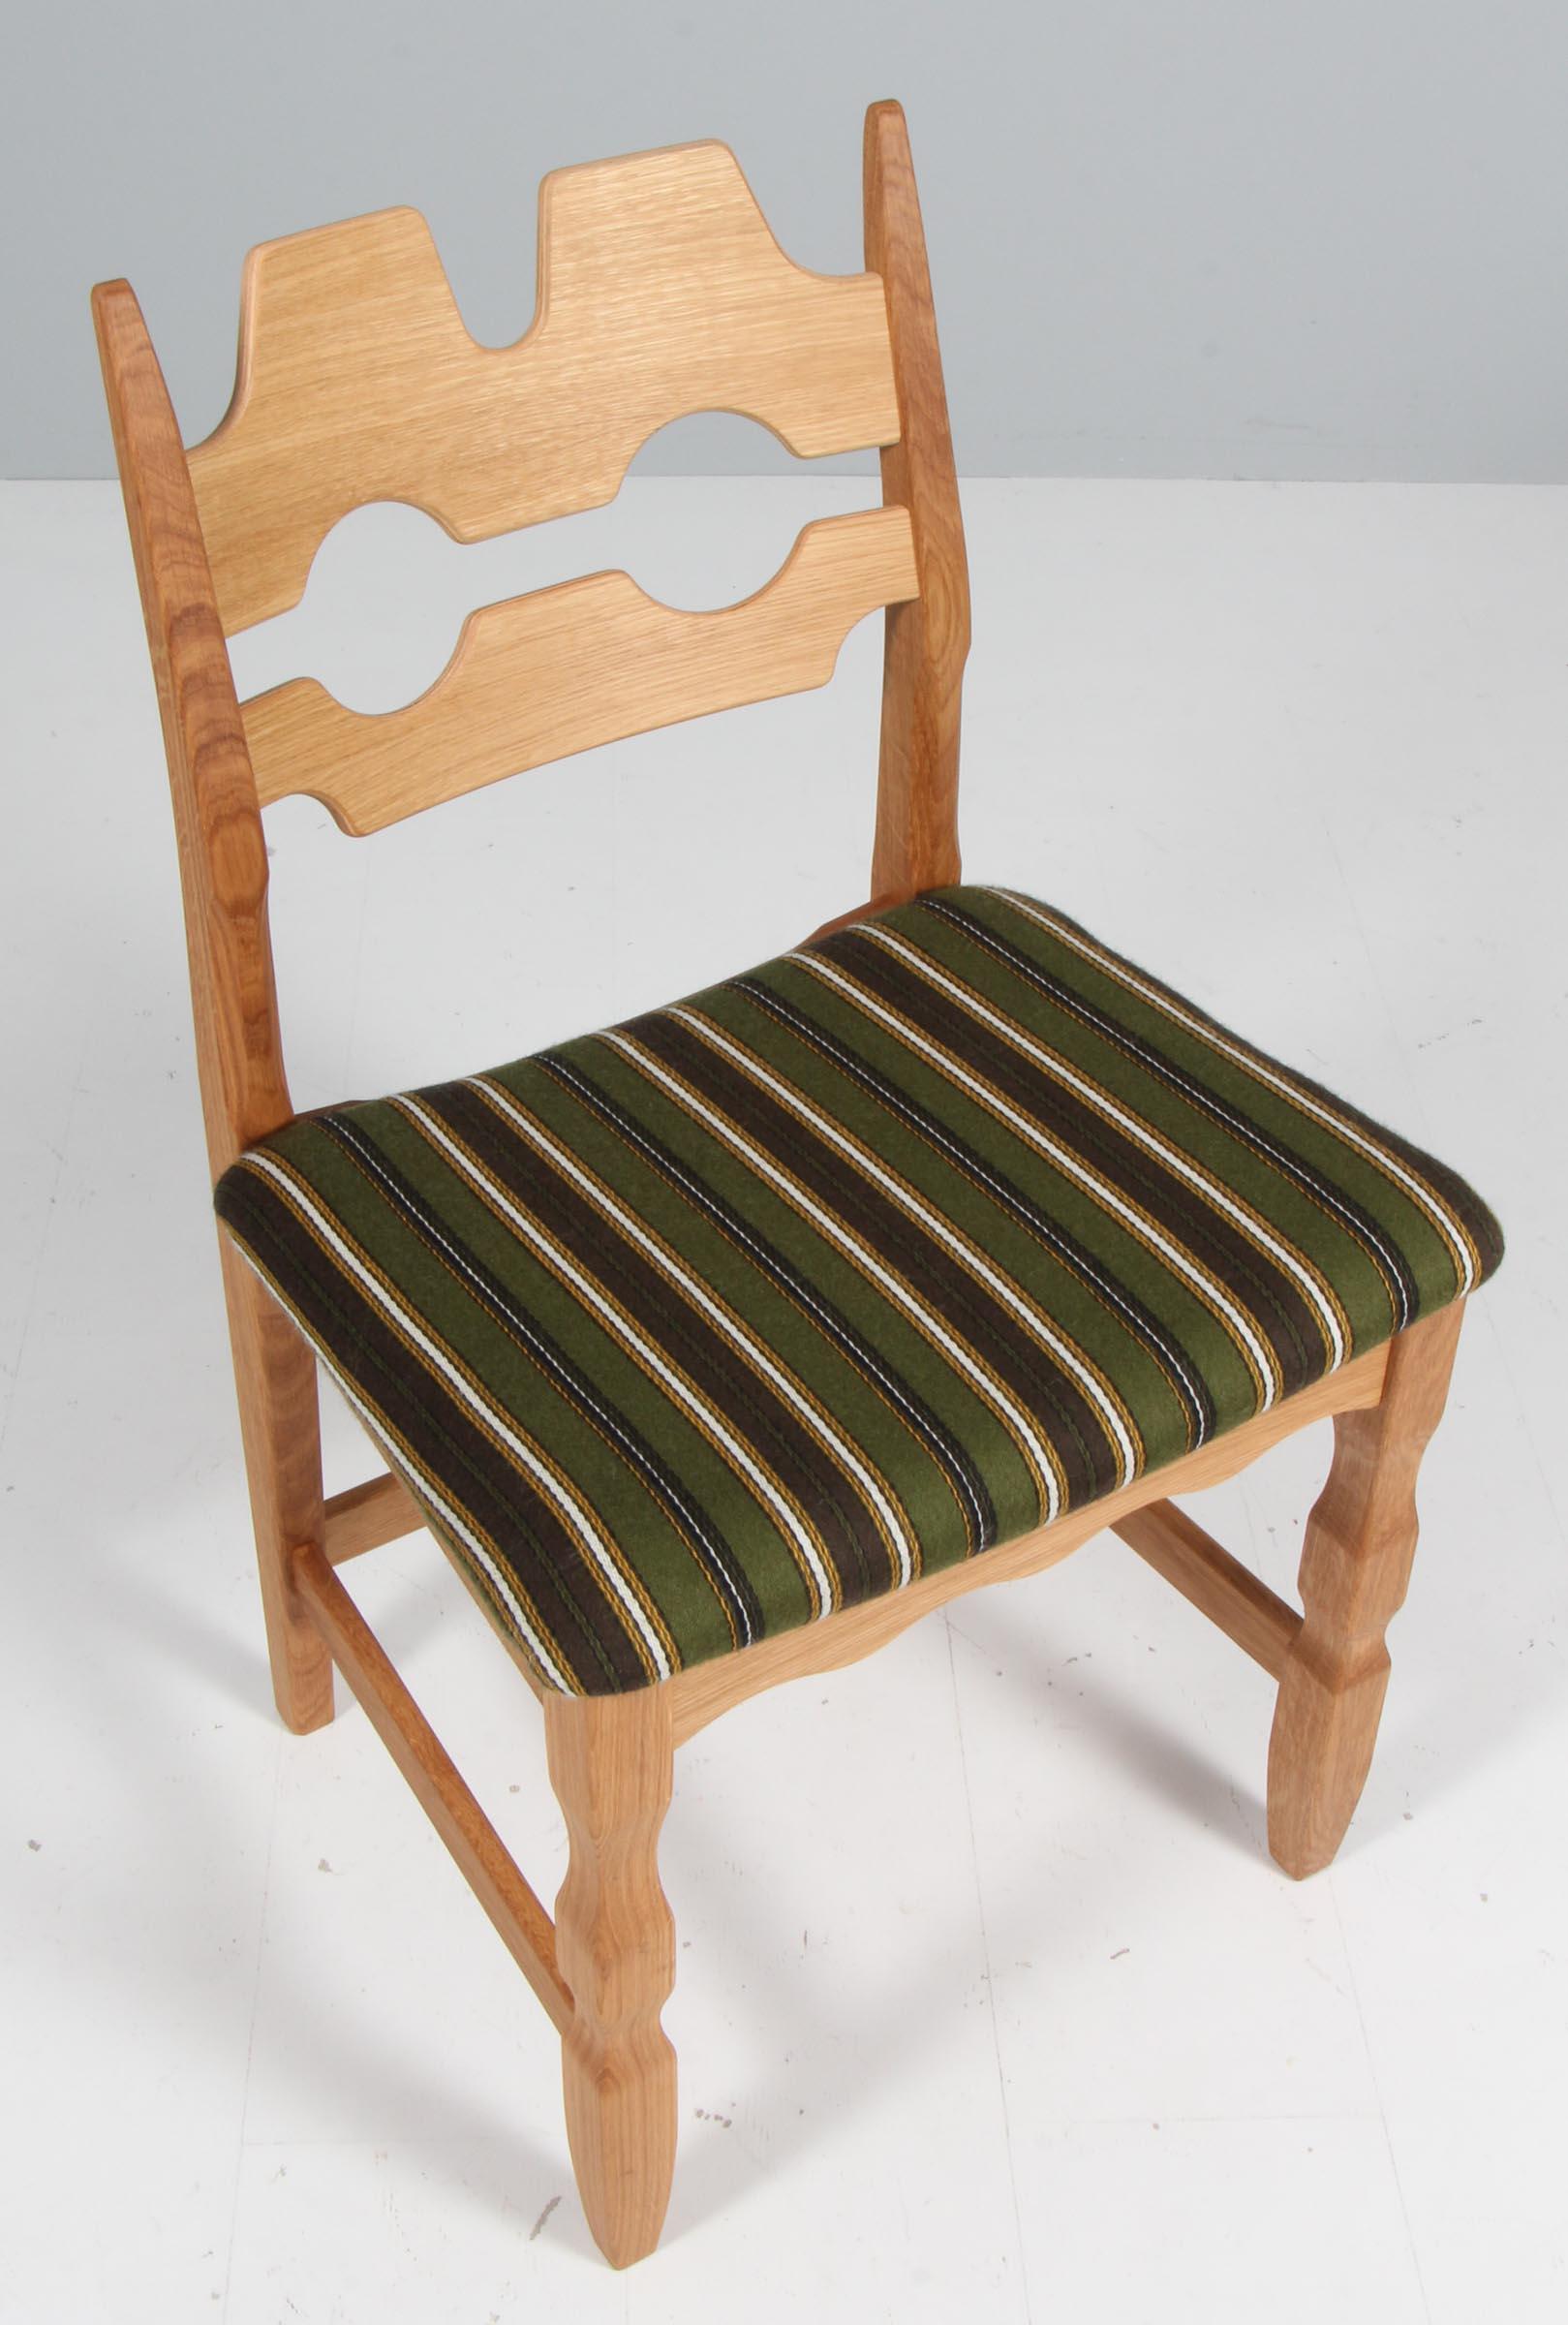 Ein Satz markanter Esszimmerstühle von Henning Kjærnulf aus Eichenholz und original Dragør-Stoff, mit dem sie ursprünglich hergestellt wurden. Zur Verfügung gestellt von Danish Art Weavery.

Erfrischendes Design mit kühnem Barock, das sich gut mit